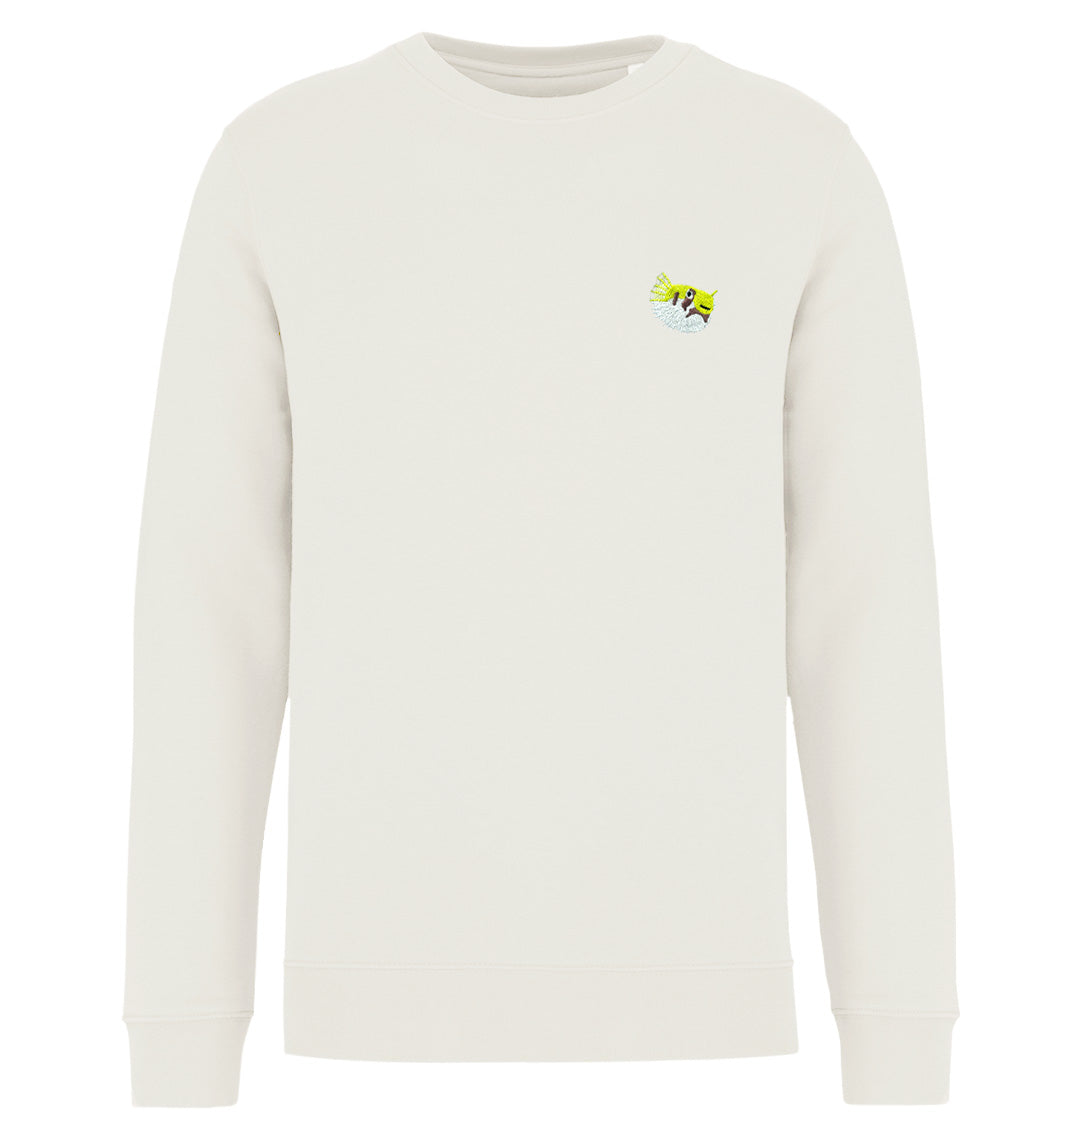 Pufferfish Womens Sweatshirt